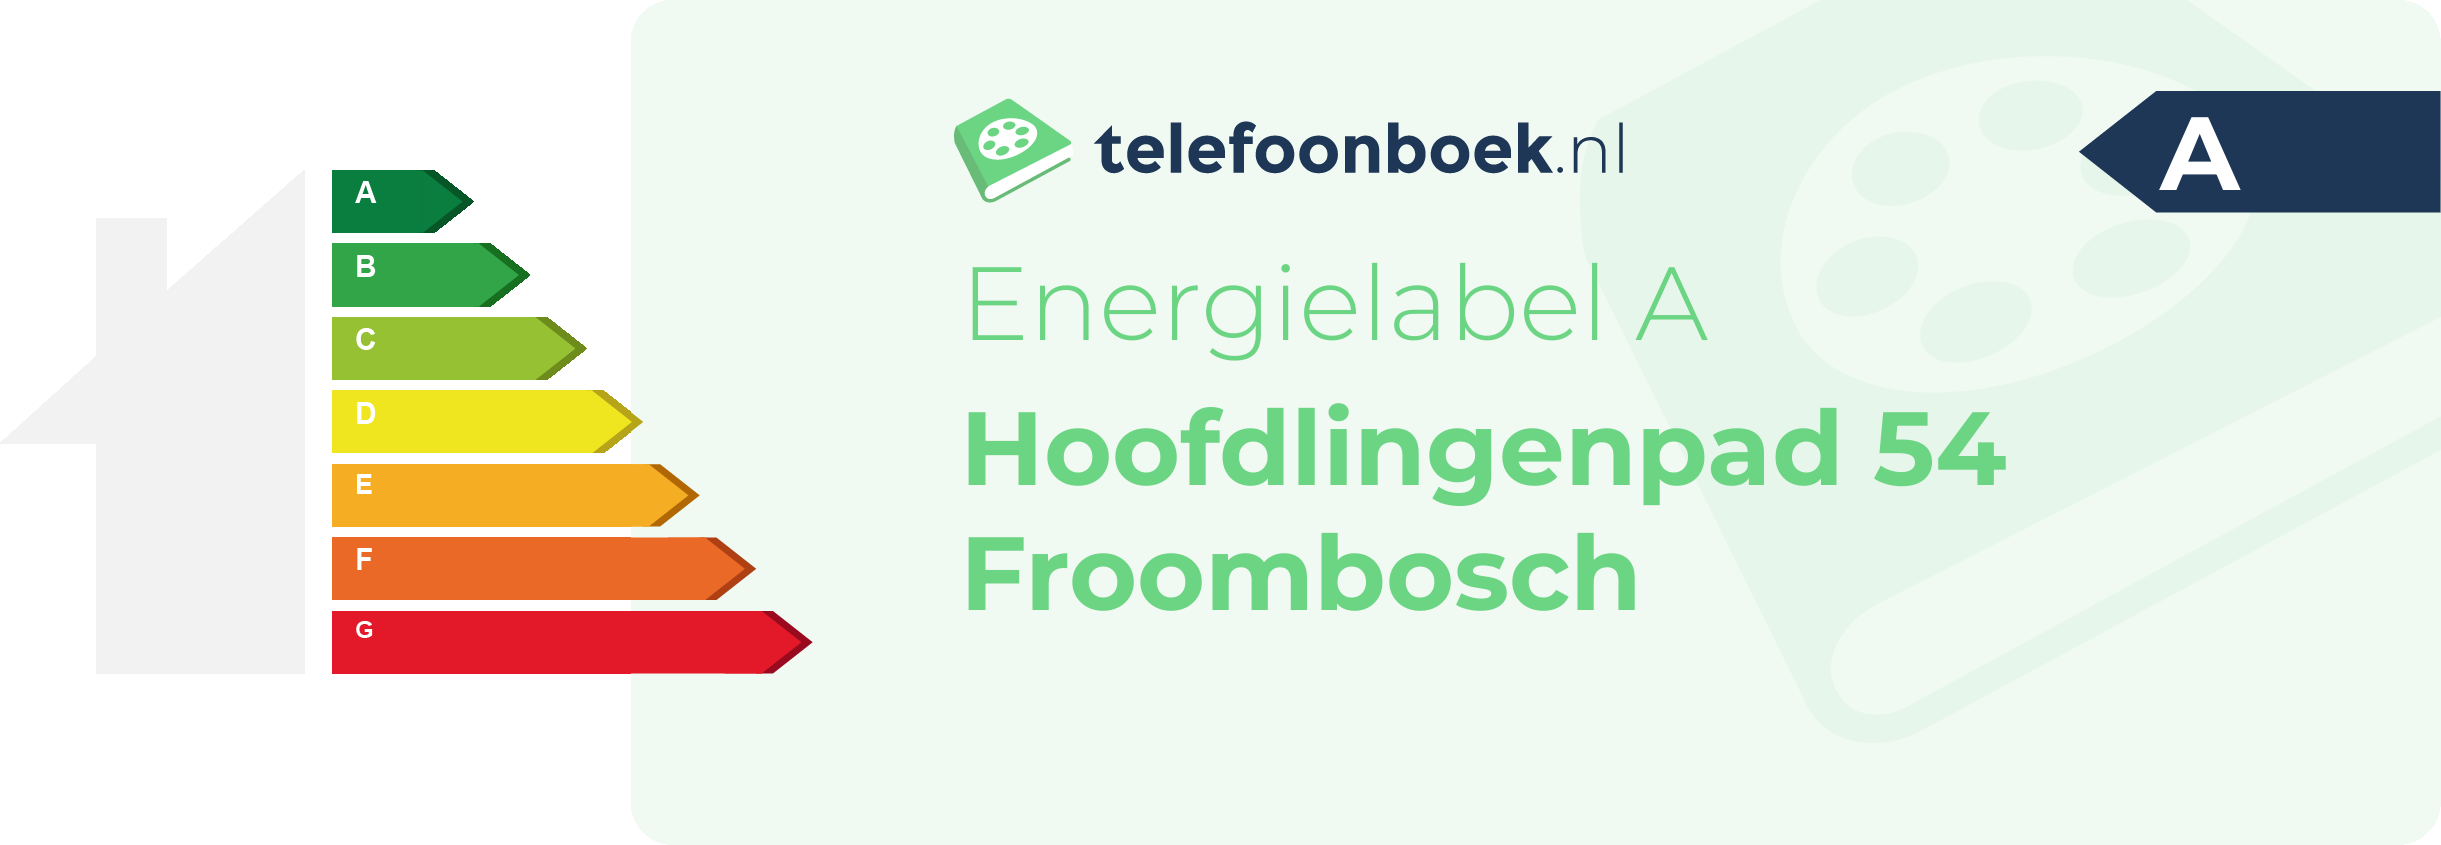 Energielabel Hoofdlingenpad 54 Froombosch